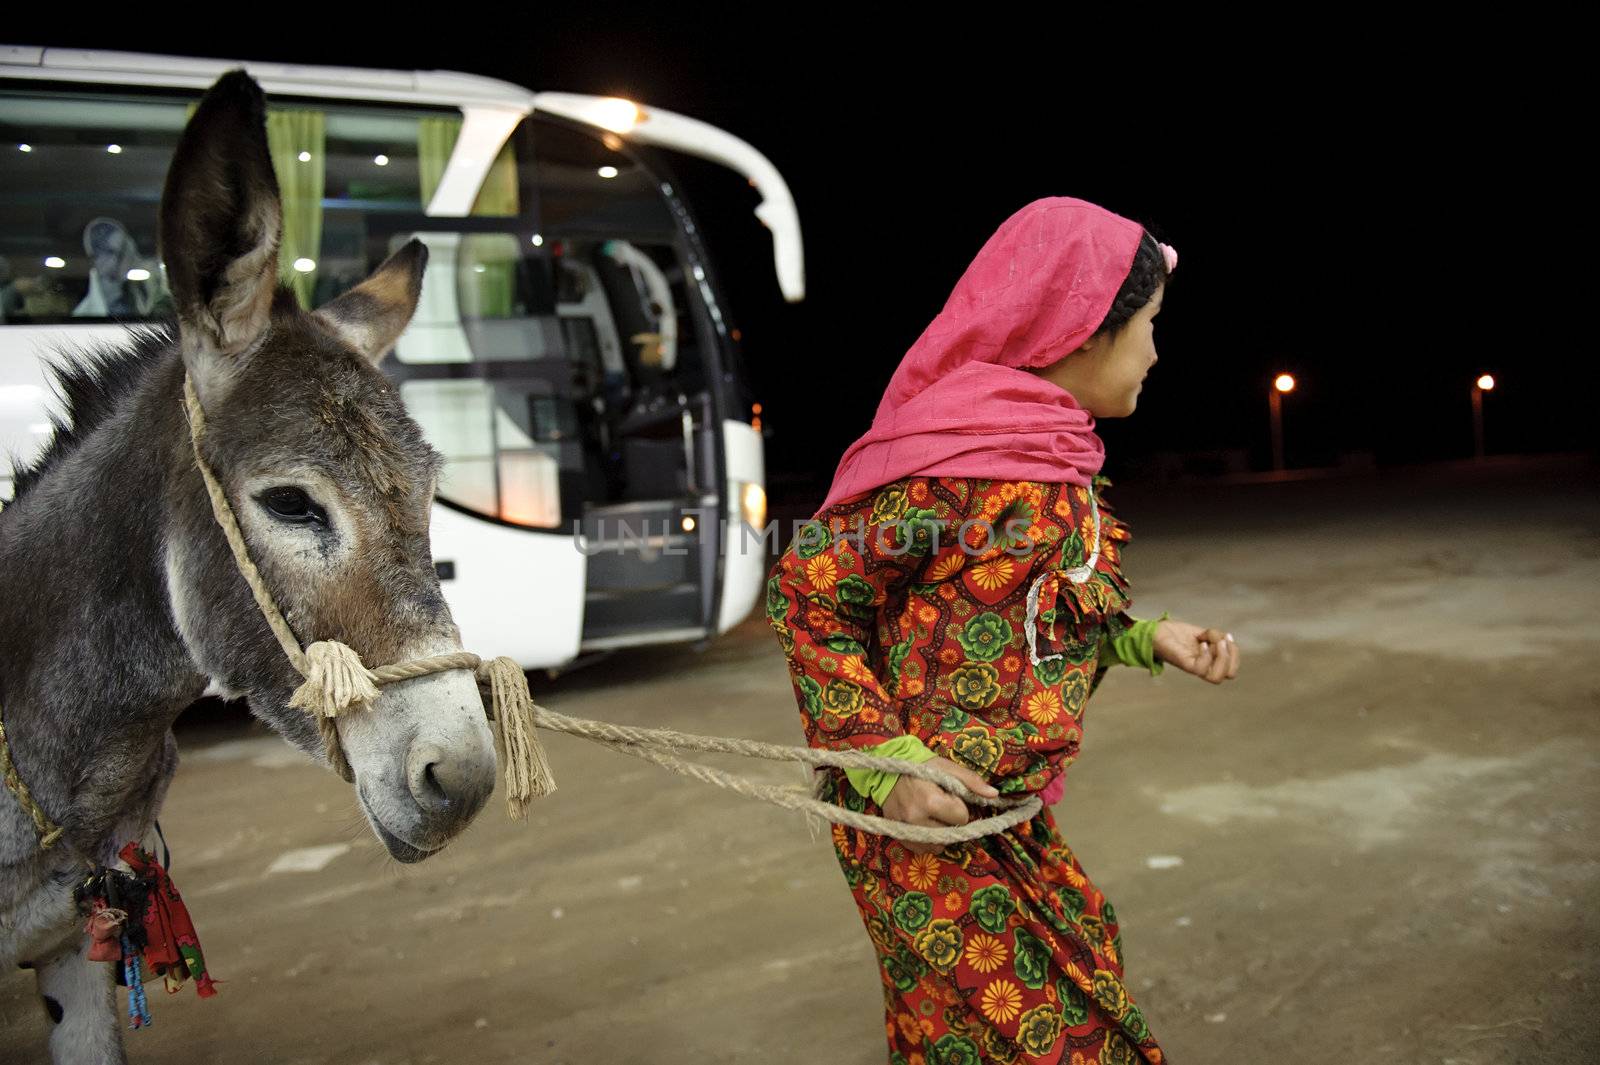 HURGHADA - JAN 29: arab girl pulling a donkey in a street at night.Jan 29,2013 in Hurghada,Egypt.